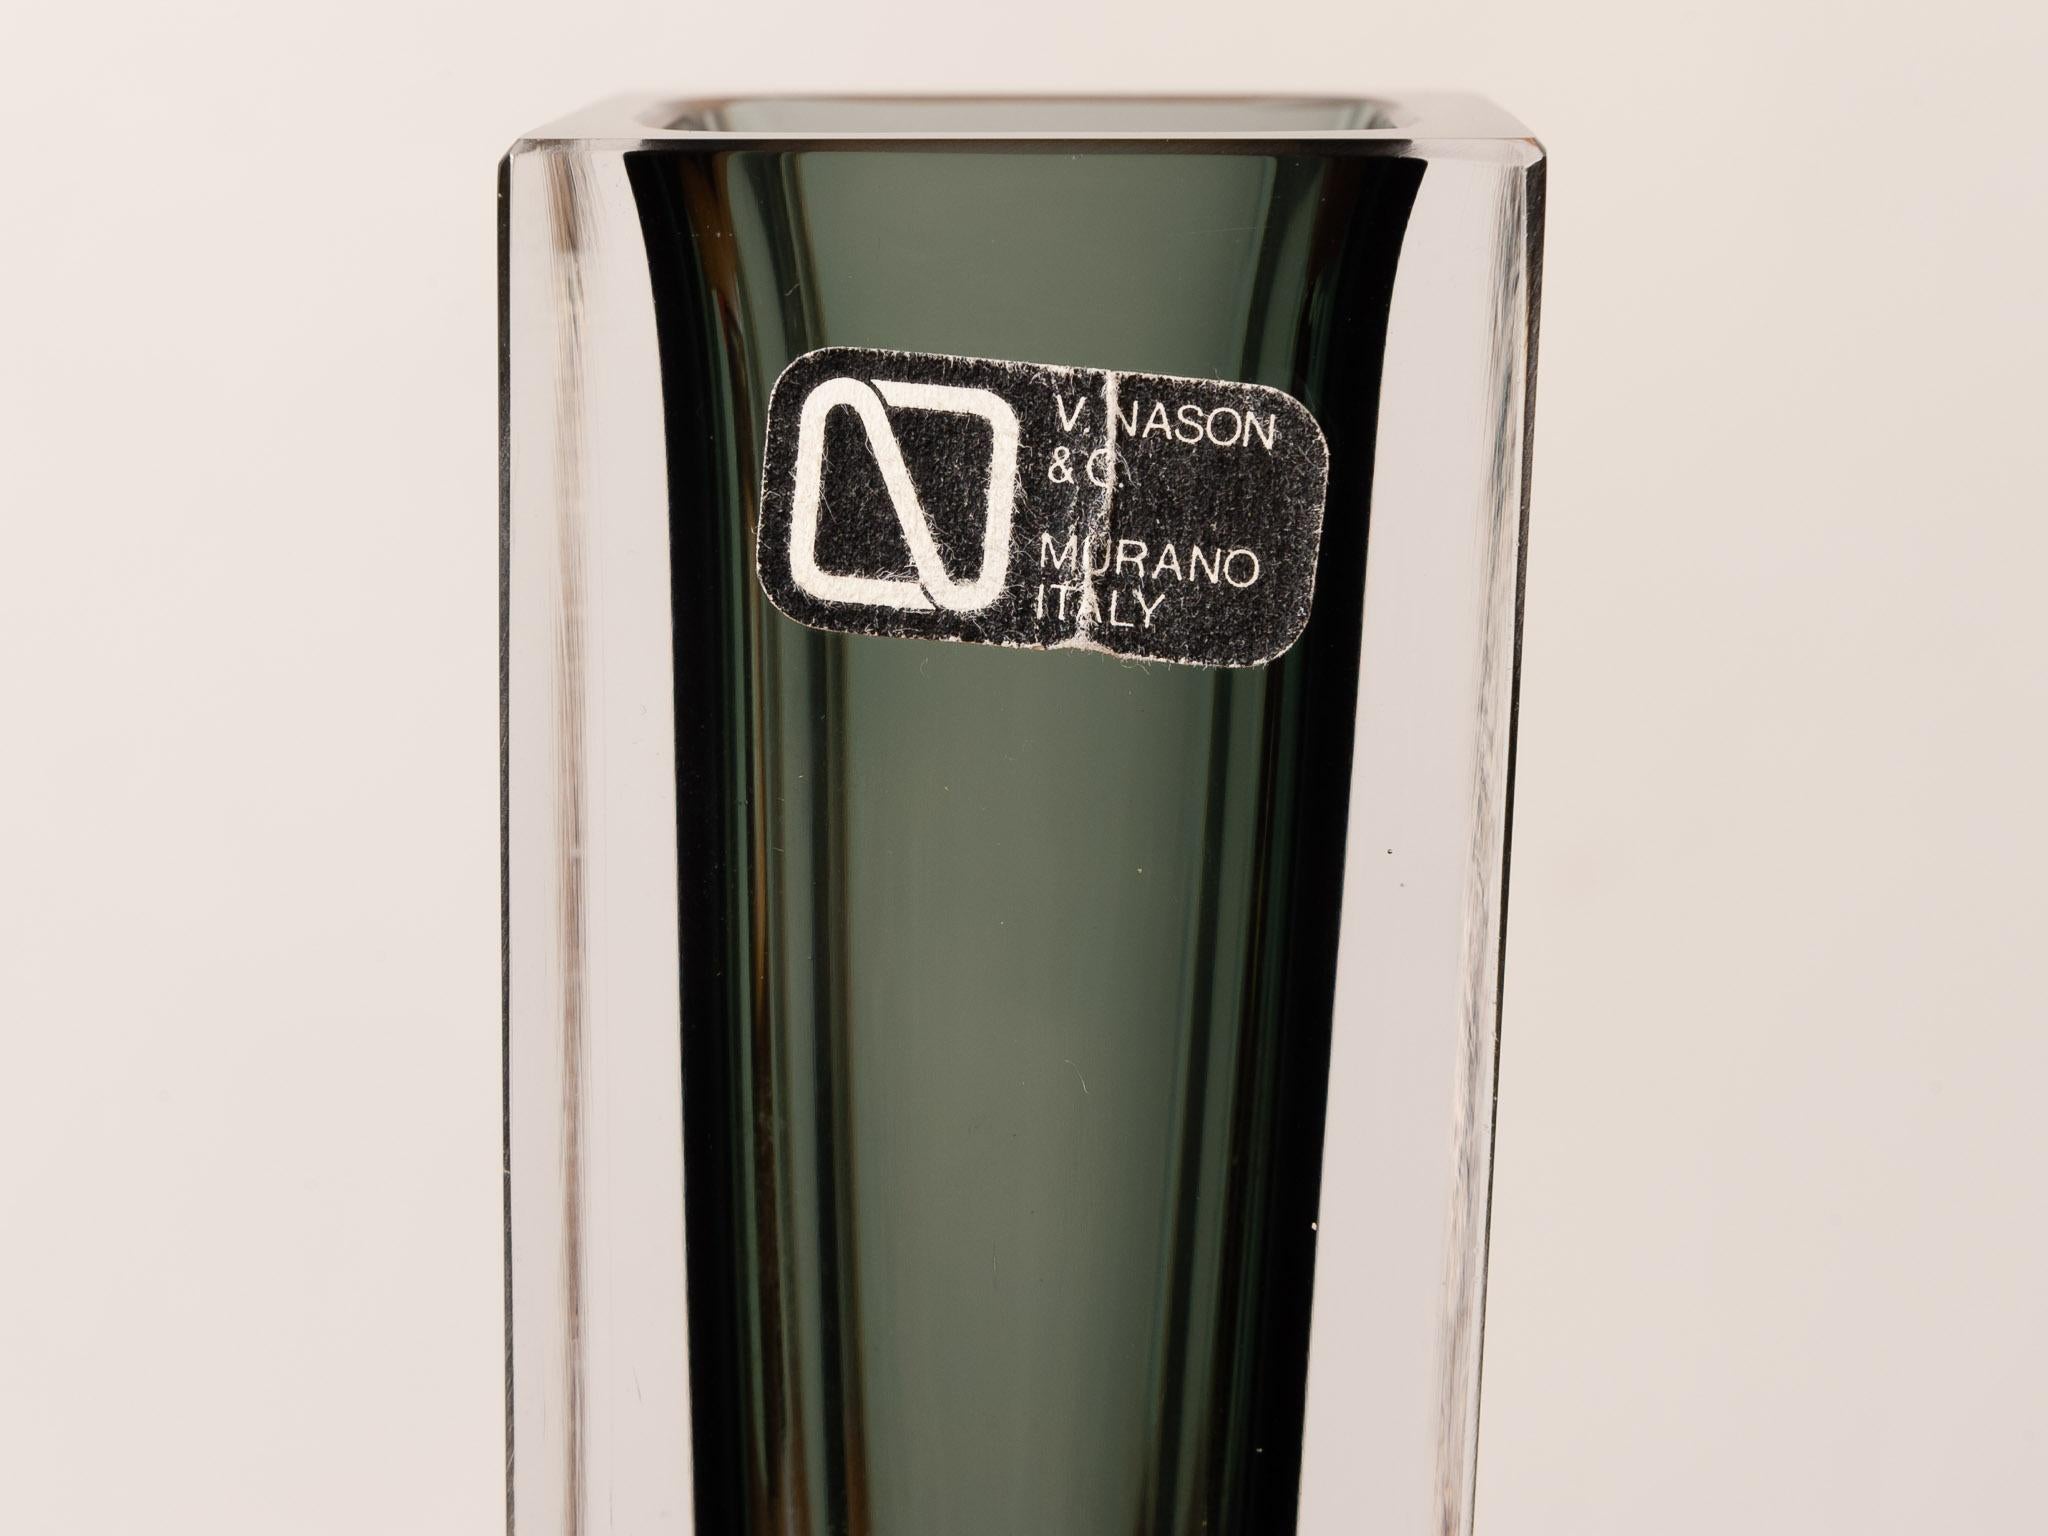 v.nason & co murano glass